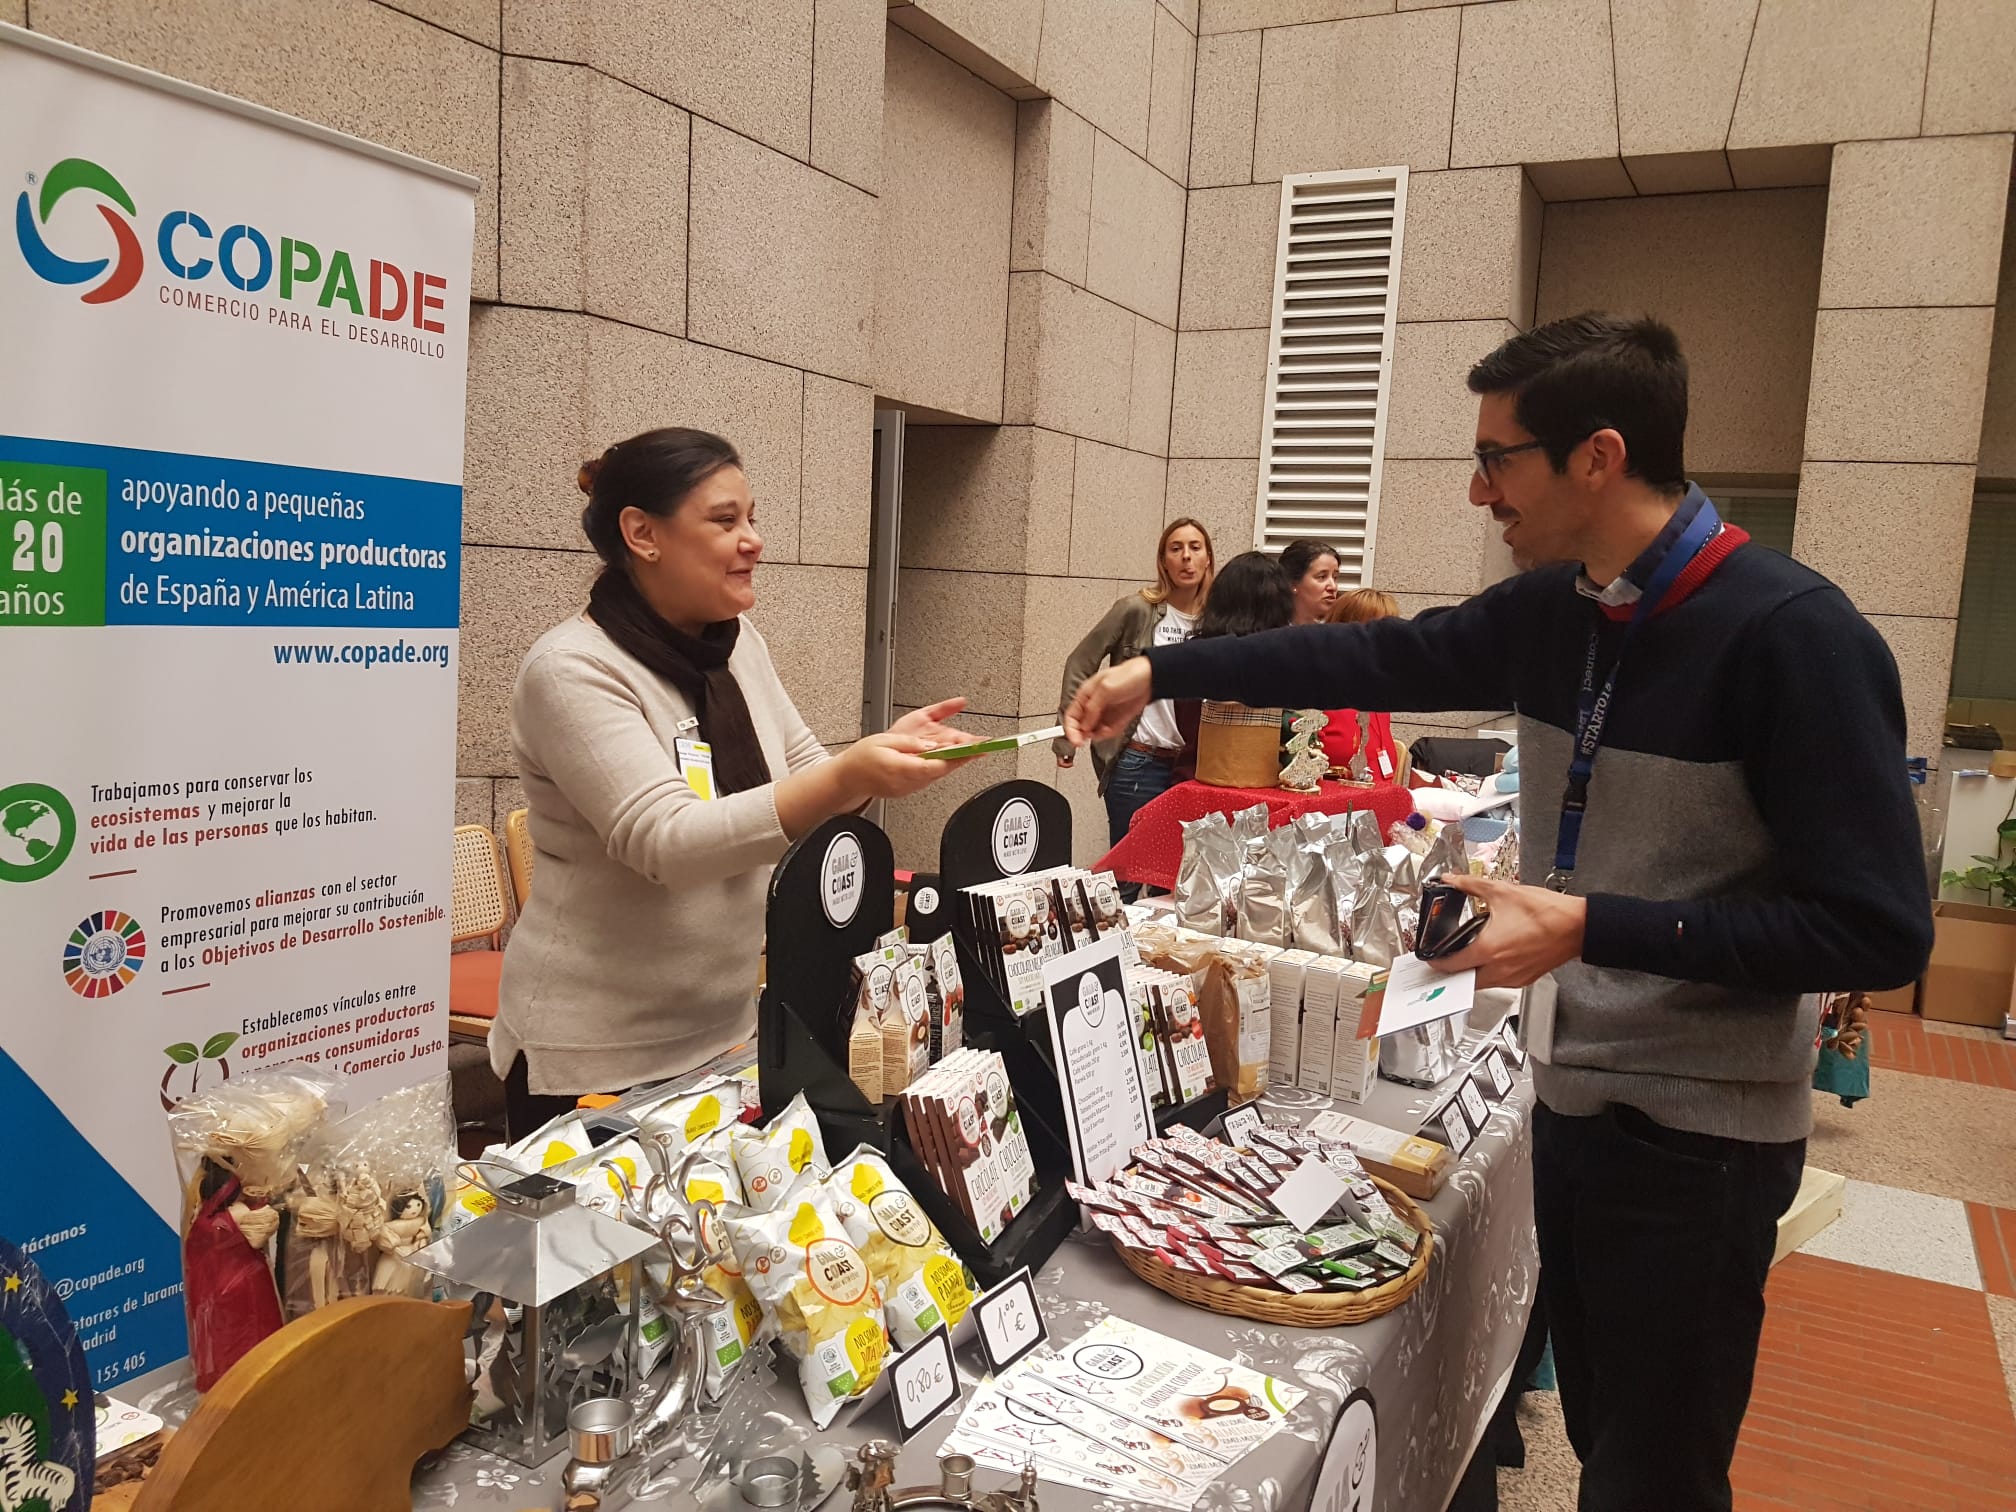 COPADE gestiona las ventas de productos de Comercio Justo, ecológicos y de economía solidaria